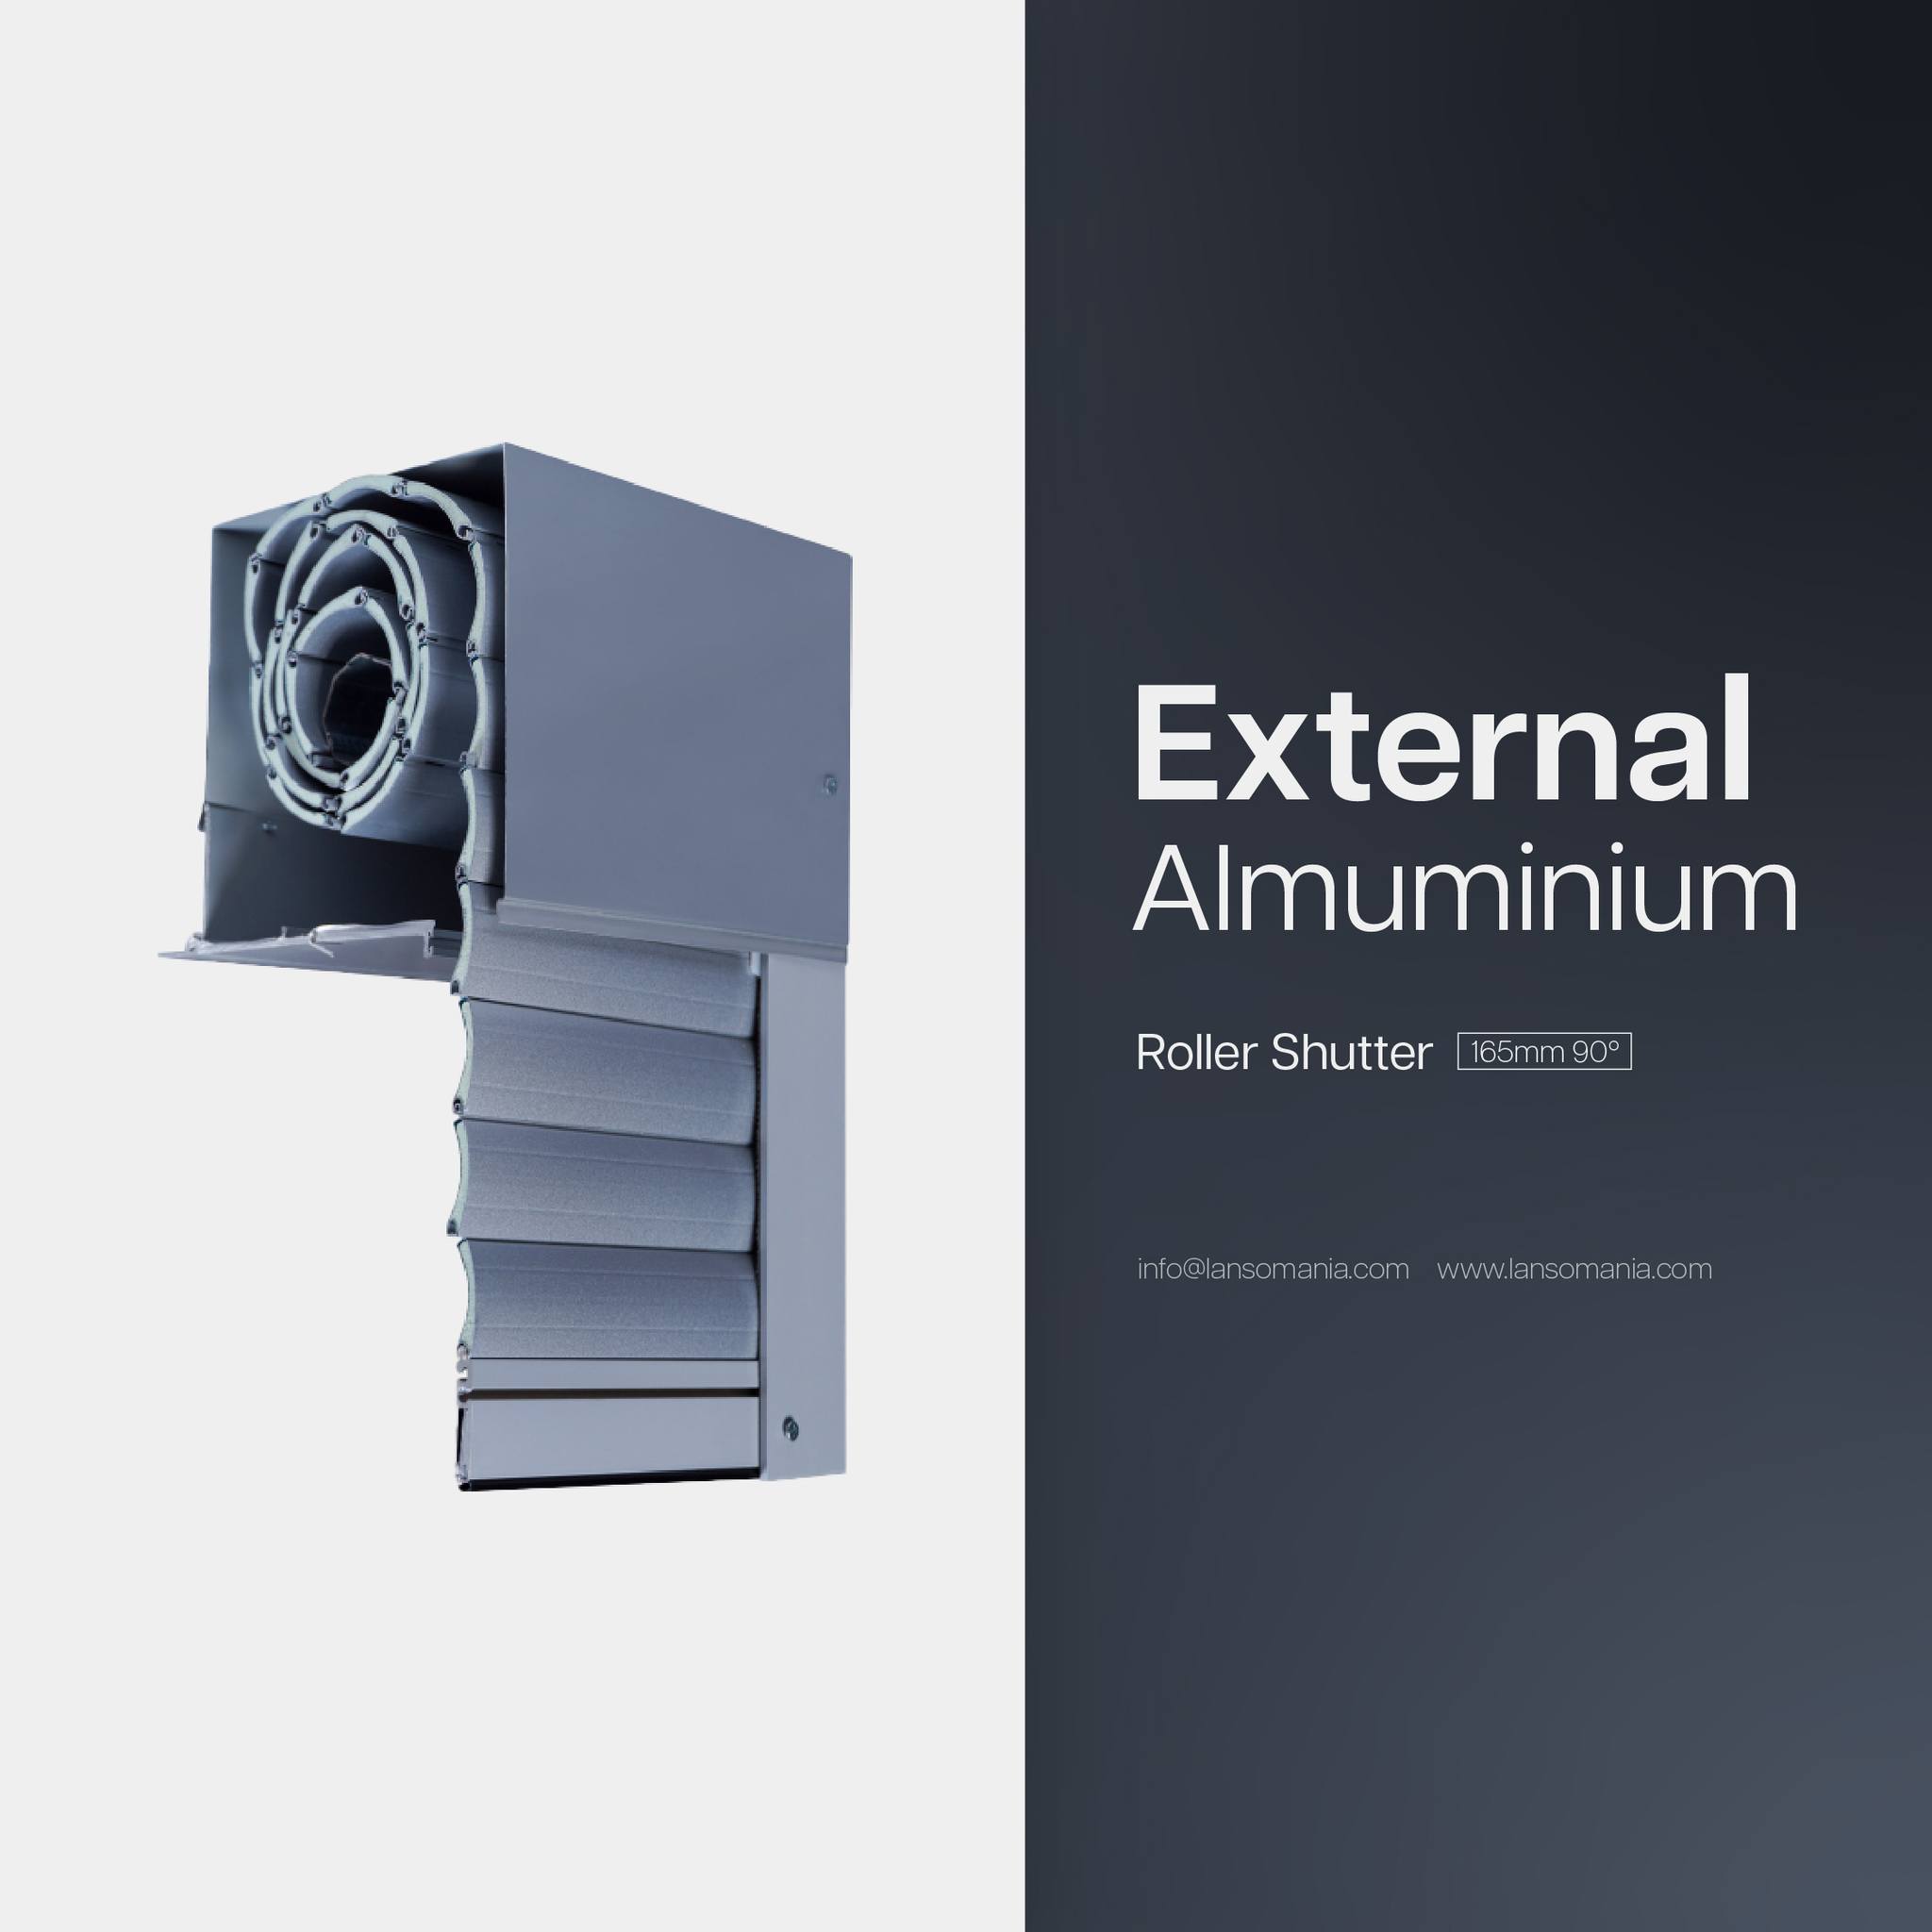 External Aluminium roller shutter 165mm 90°